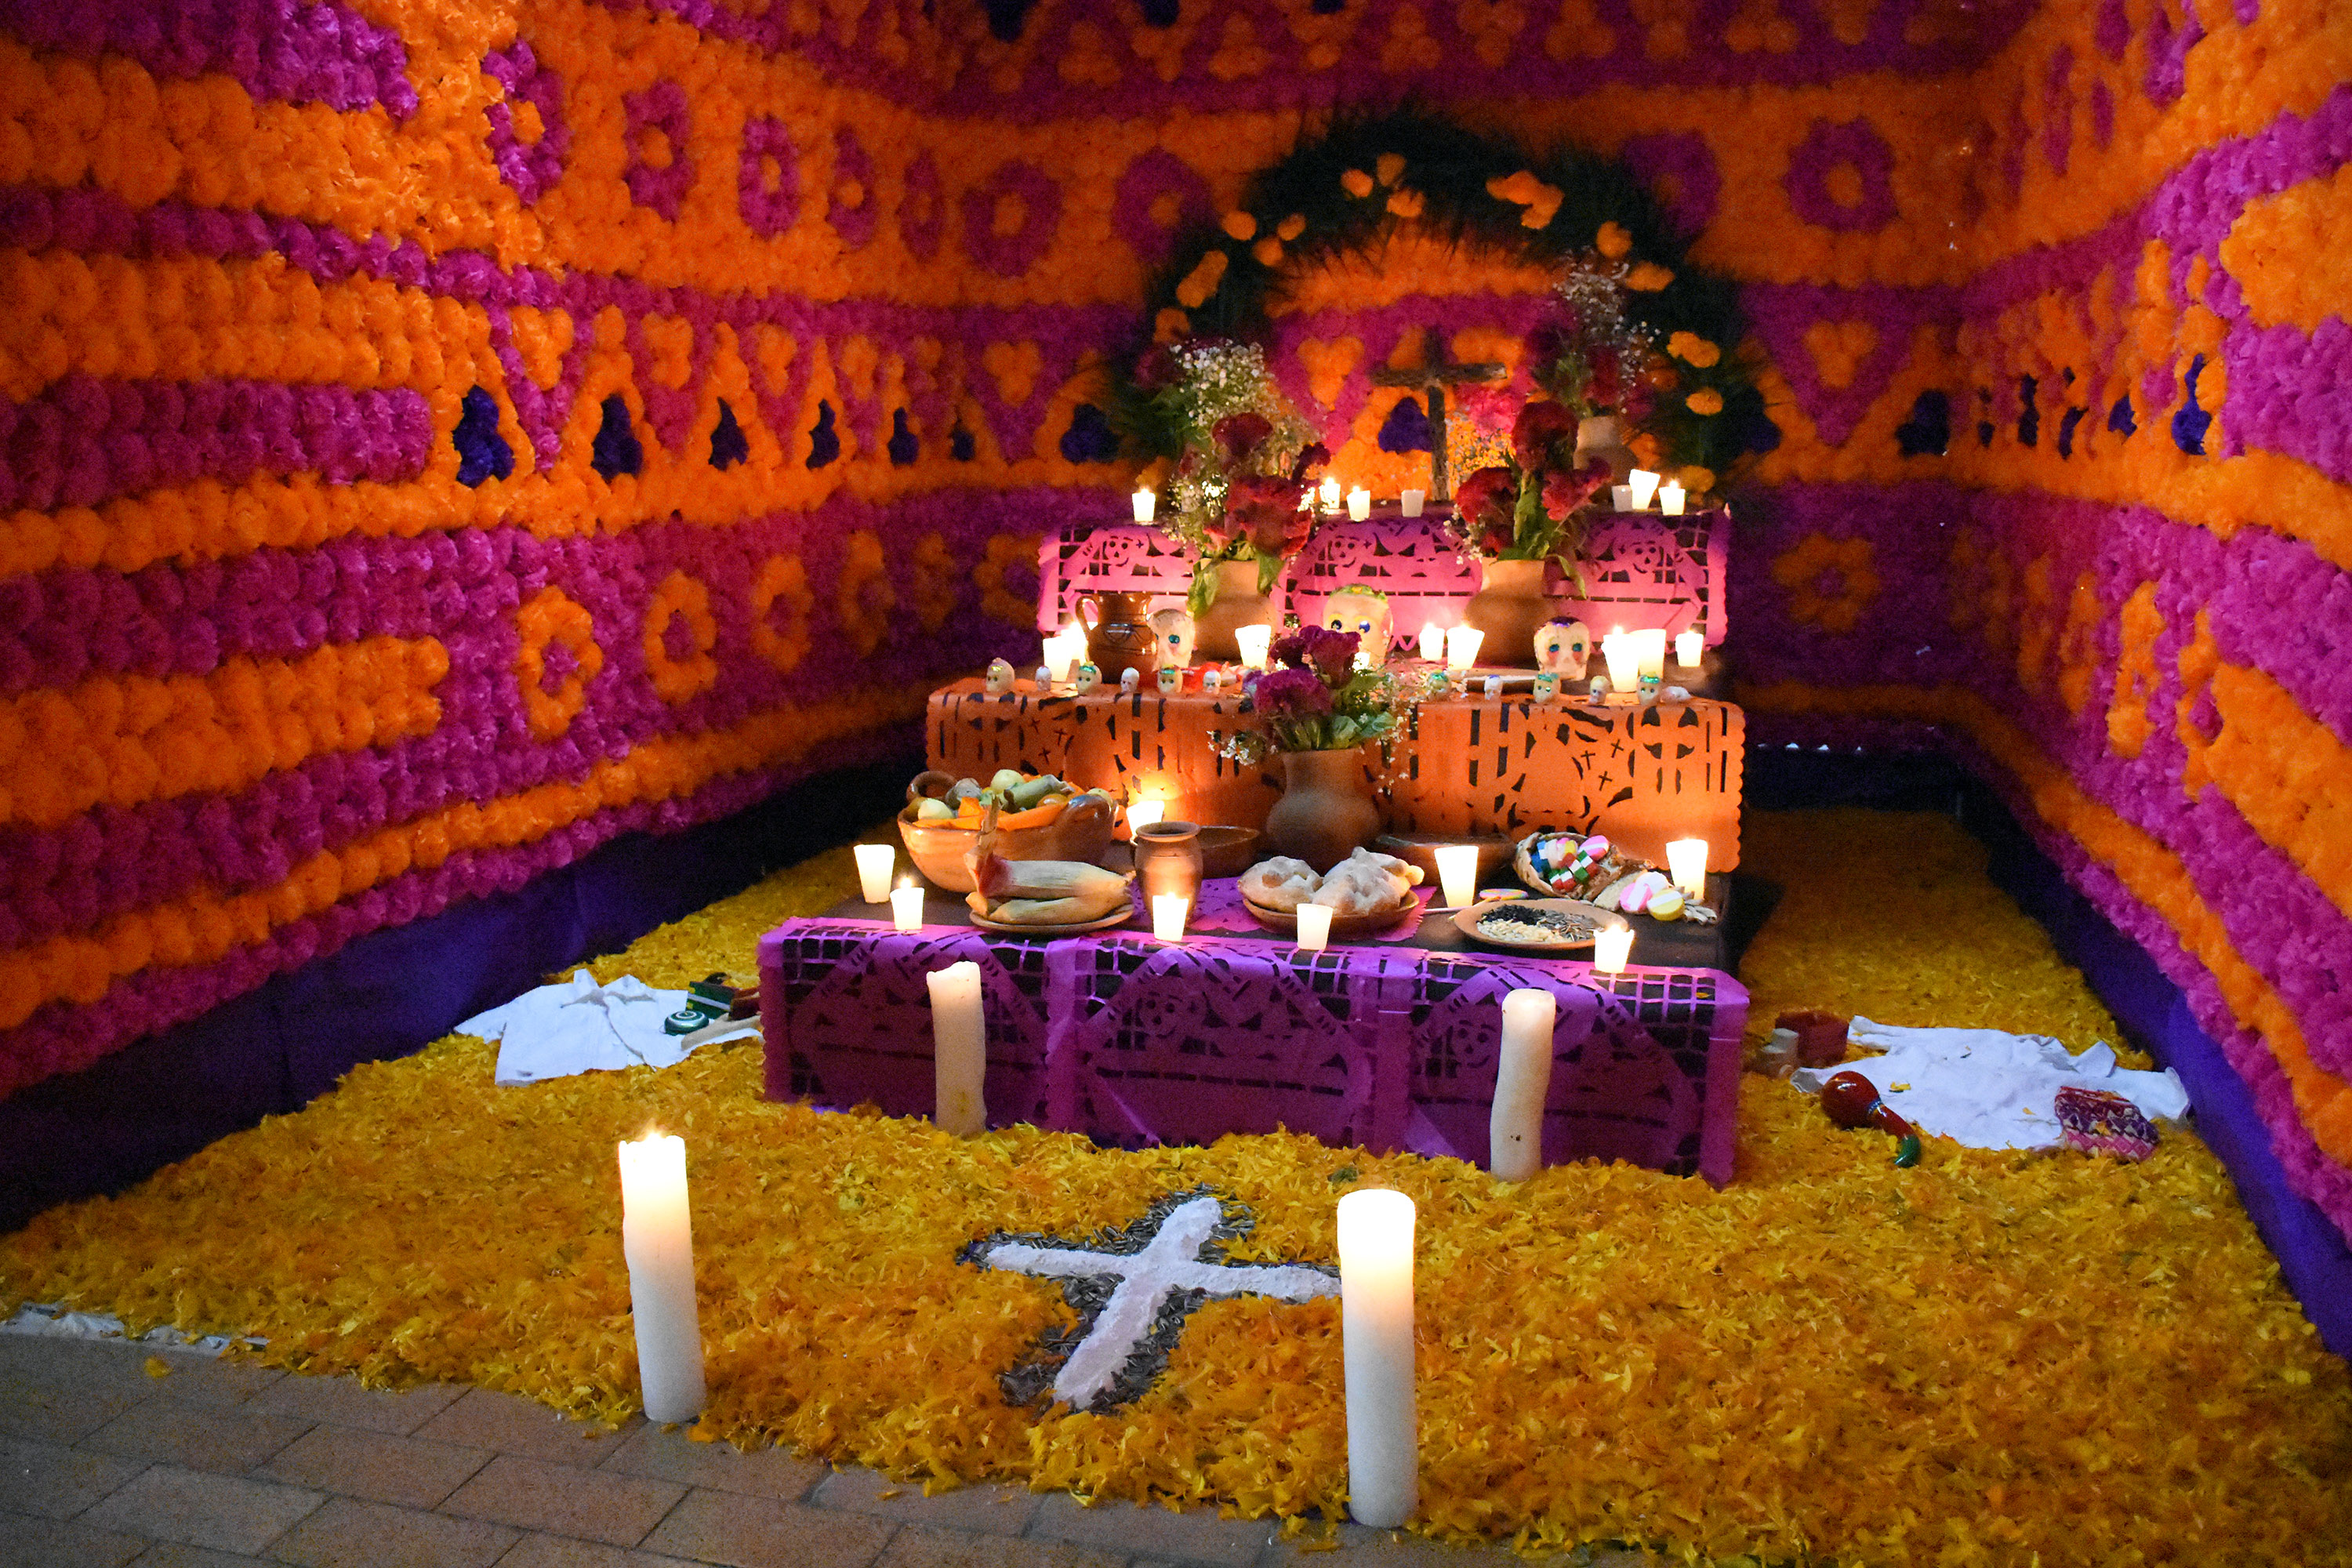 Usebeq celebra concurso de altares de muertos | Querétaro